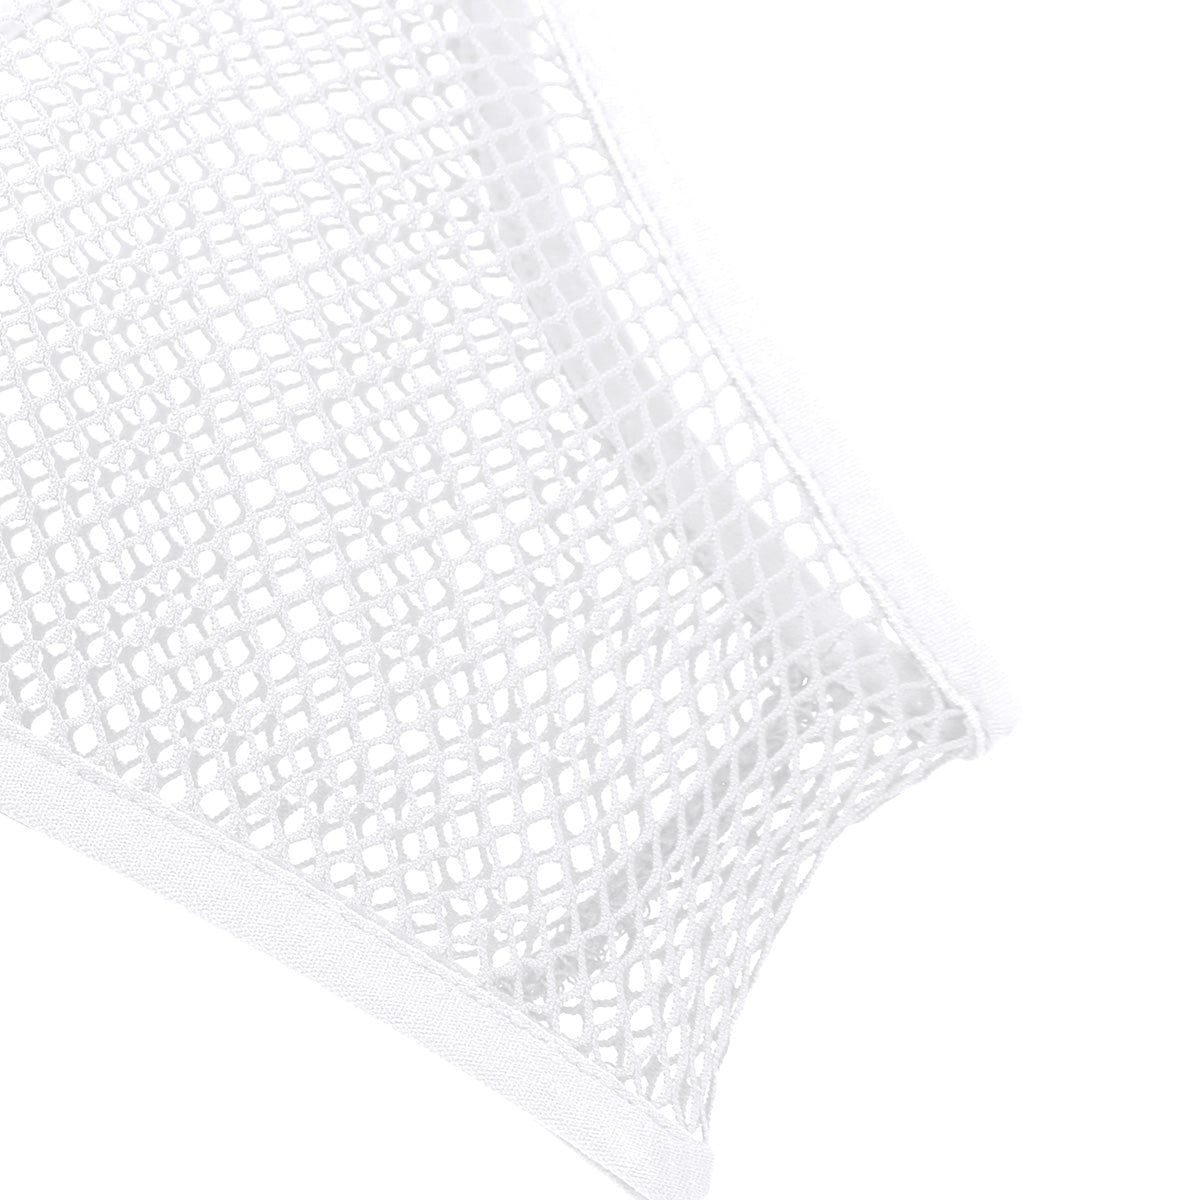 white mesh fishnet bra for raves and festivals